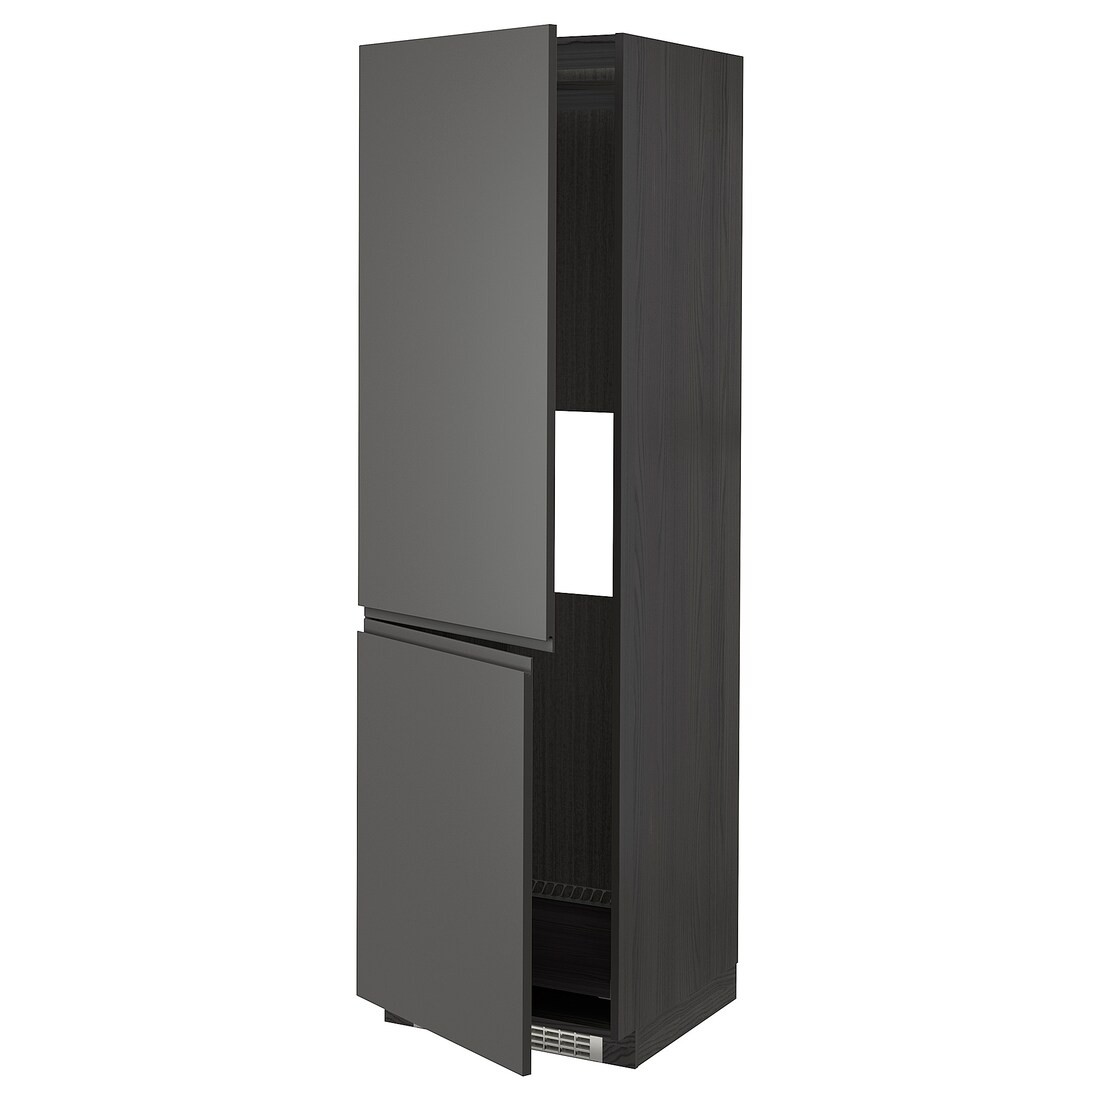 IKEA METOD МЕТОД Высокий шкаф для холодильника / морозильника, черный / Voxtorp темно-серый, 60x60x200 см 99304050 993.040.50